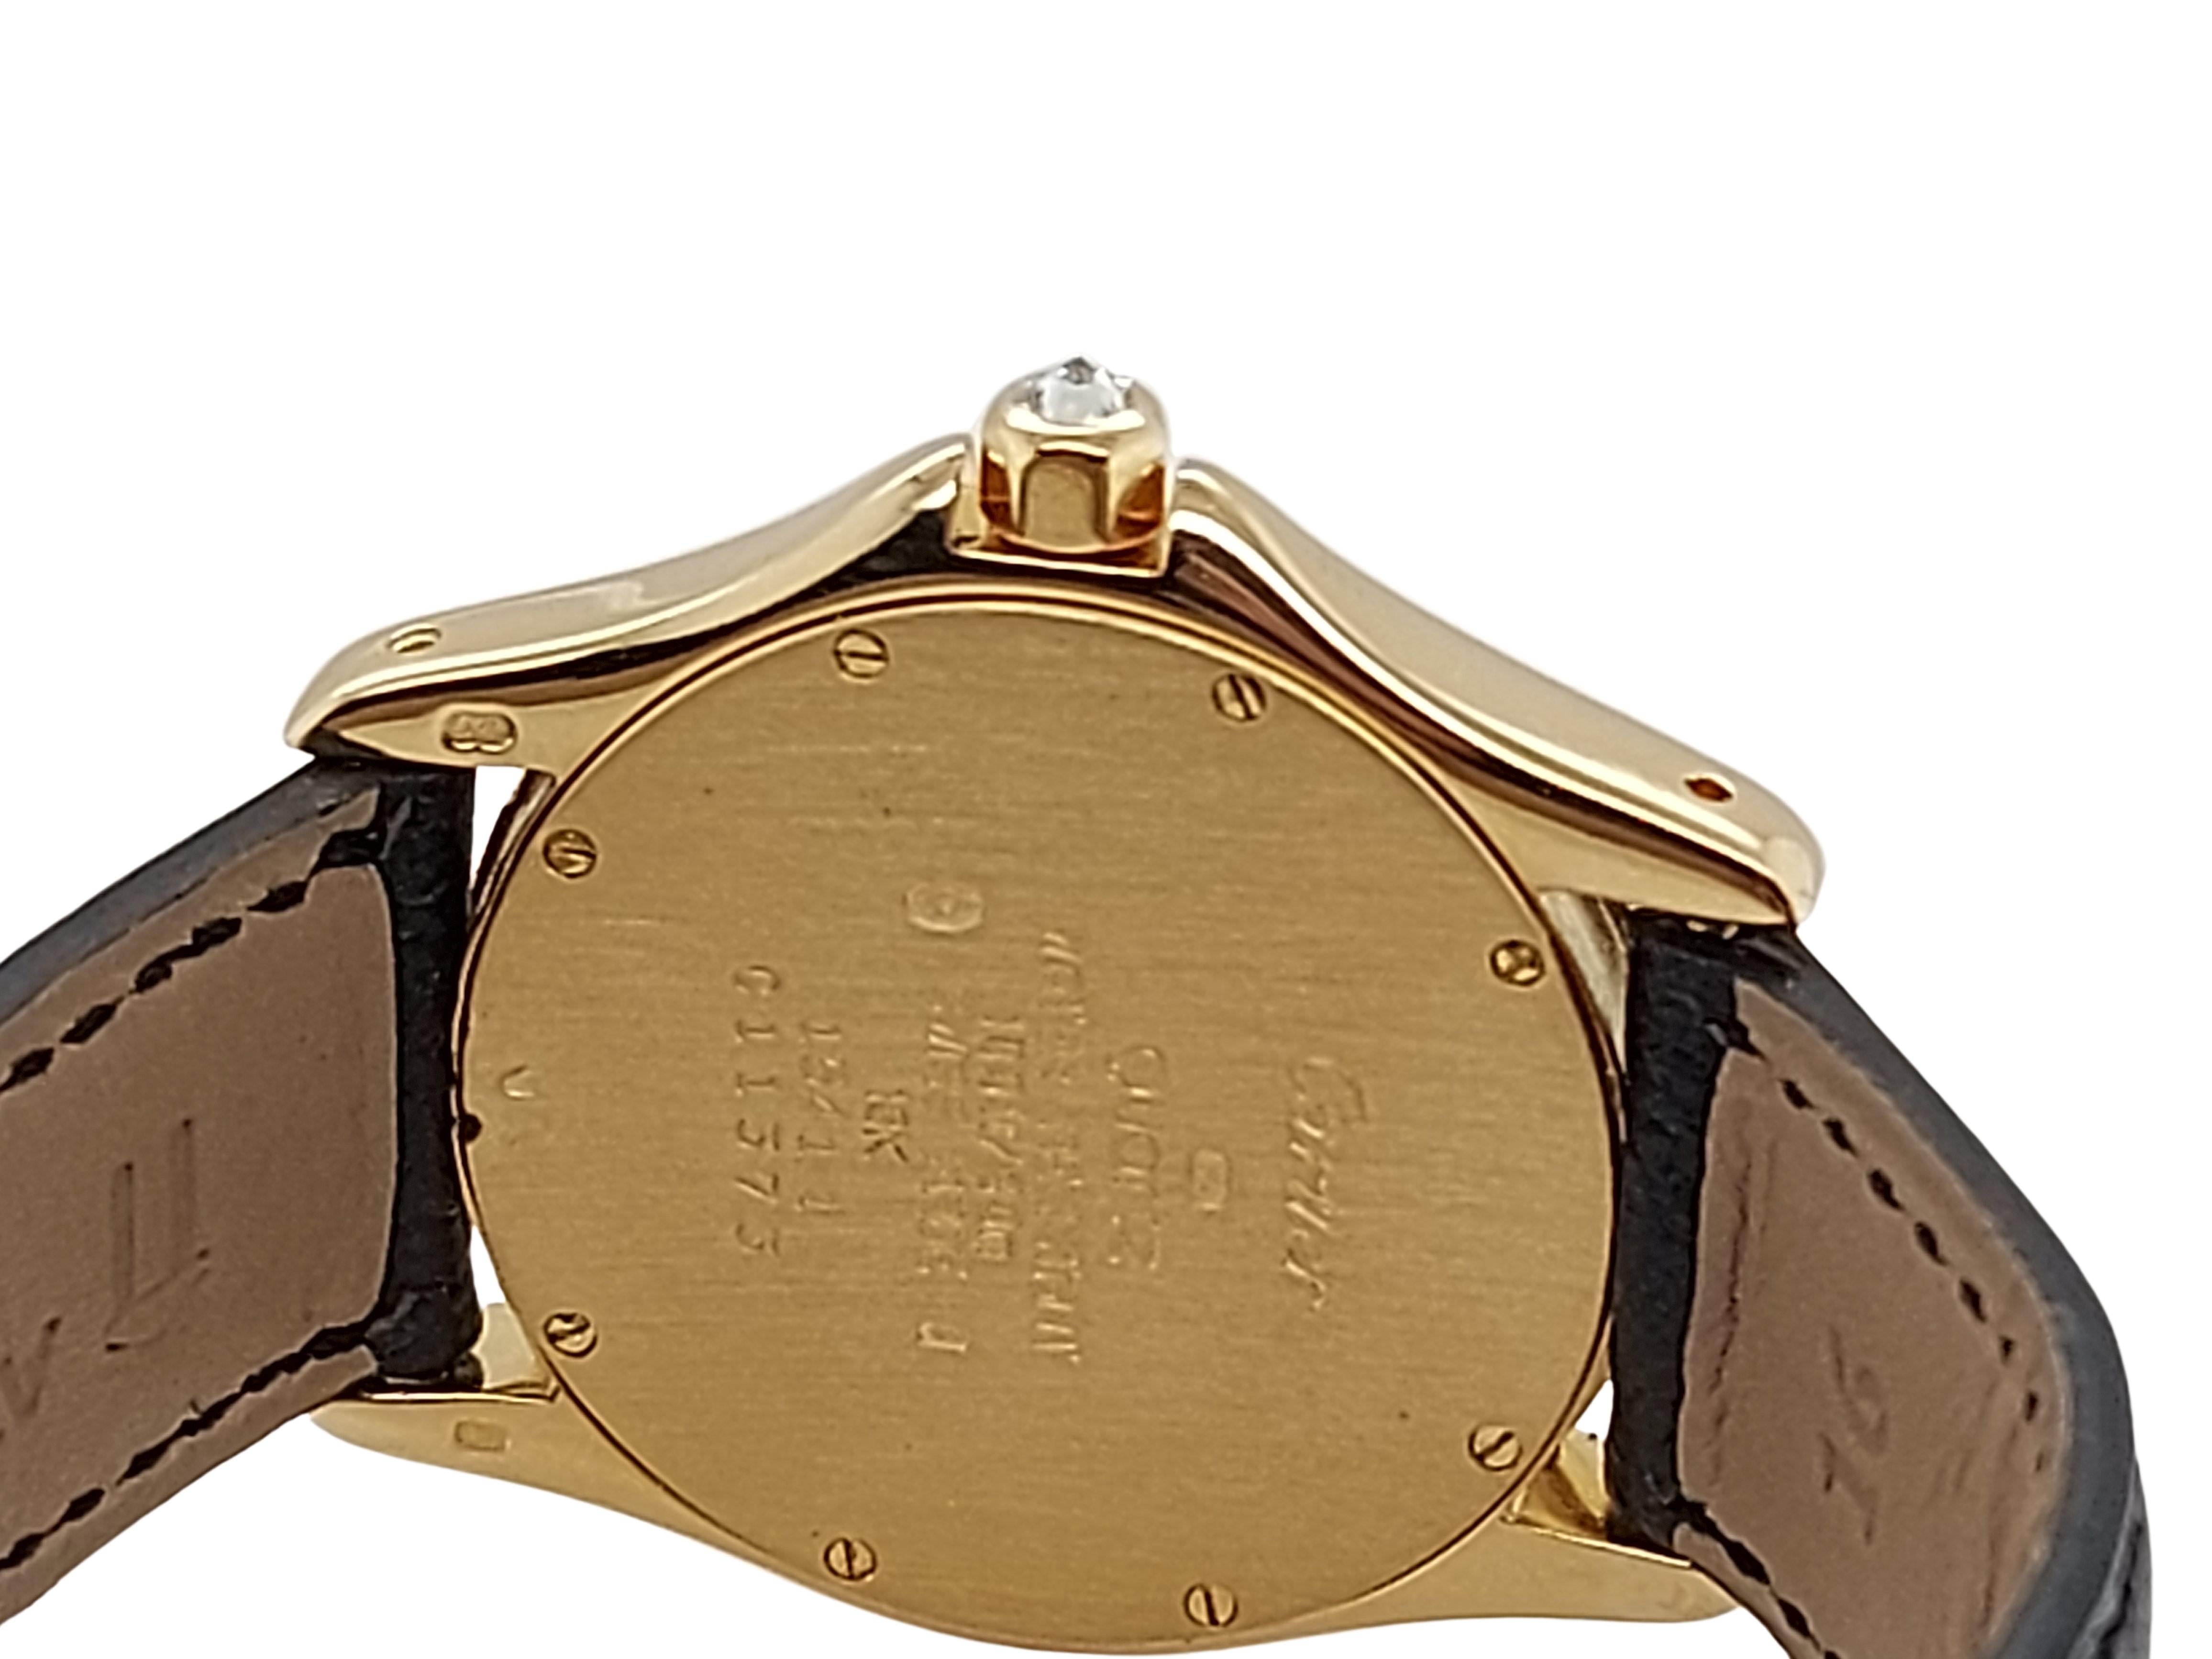 Cartier Cougar Wristwatch, 18 Karat Yellow Gold, Diamond Bezel, Quartz 5